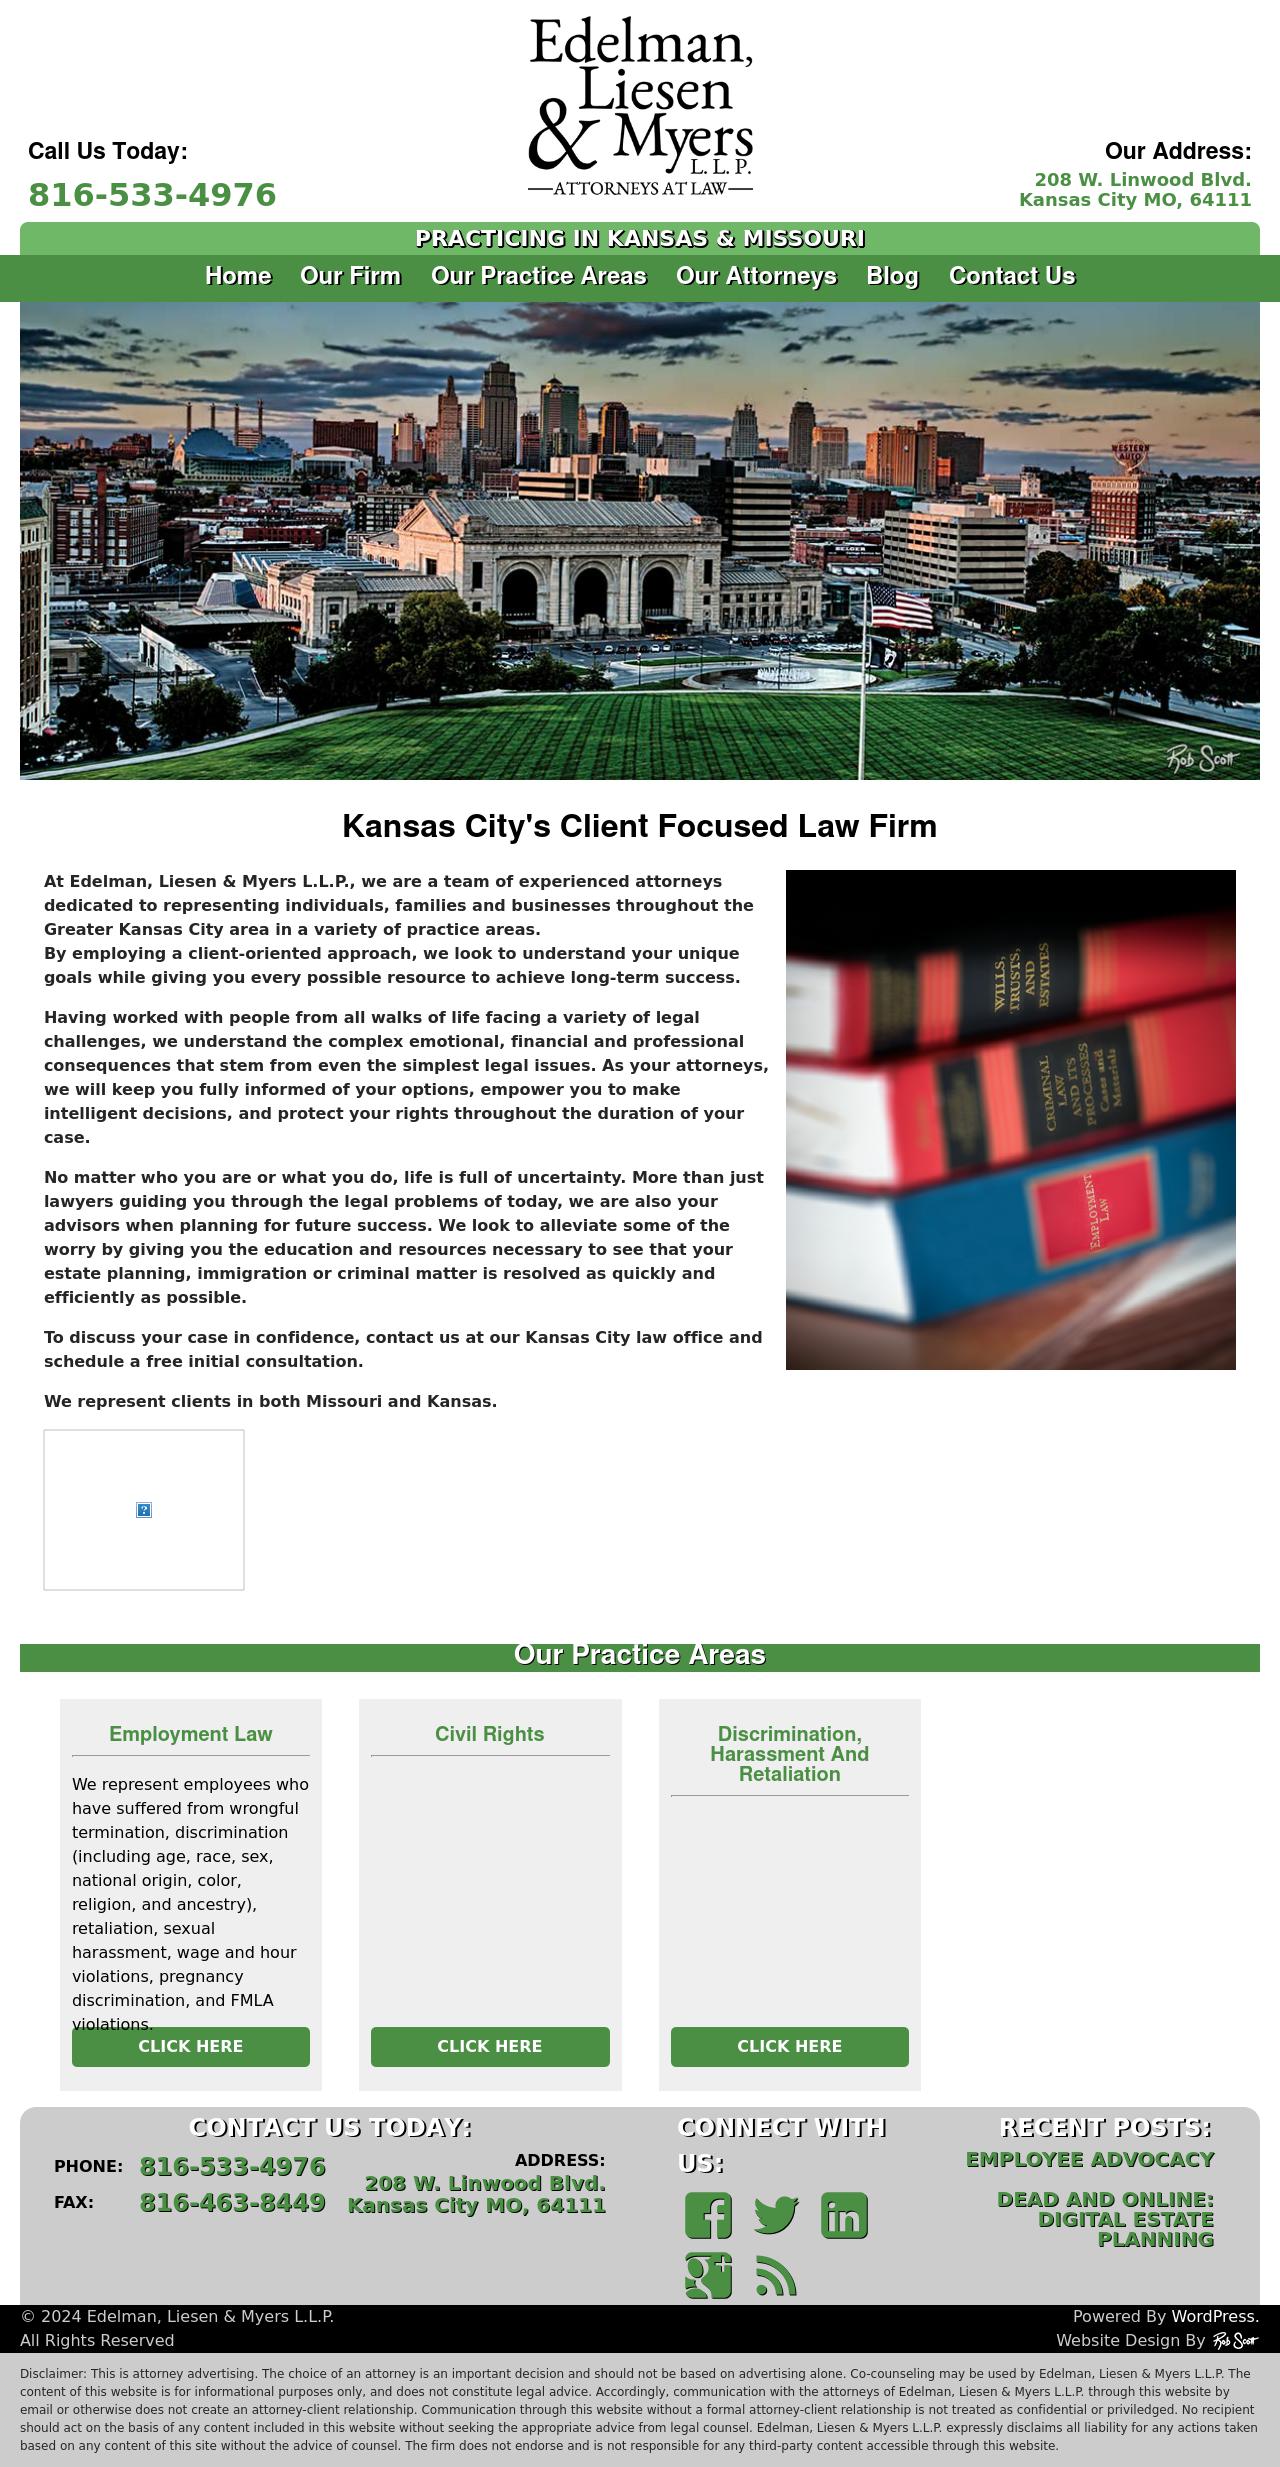 Edelman, Liesen & Myers L.L.P. - Kansas City MO Lawyers